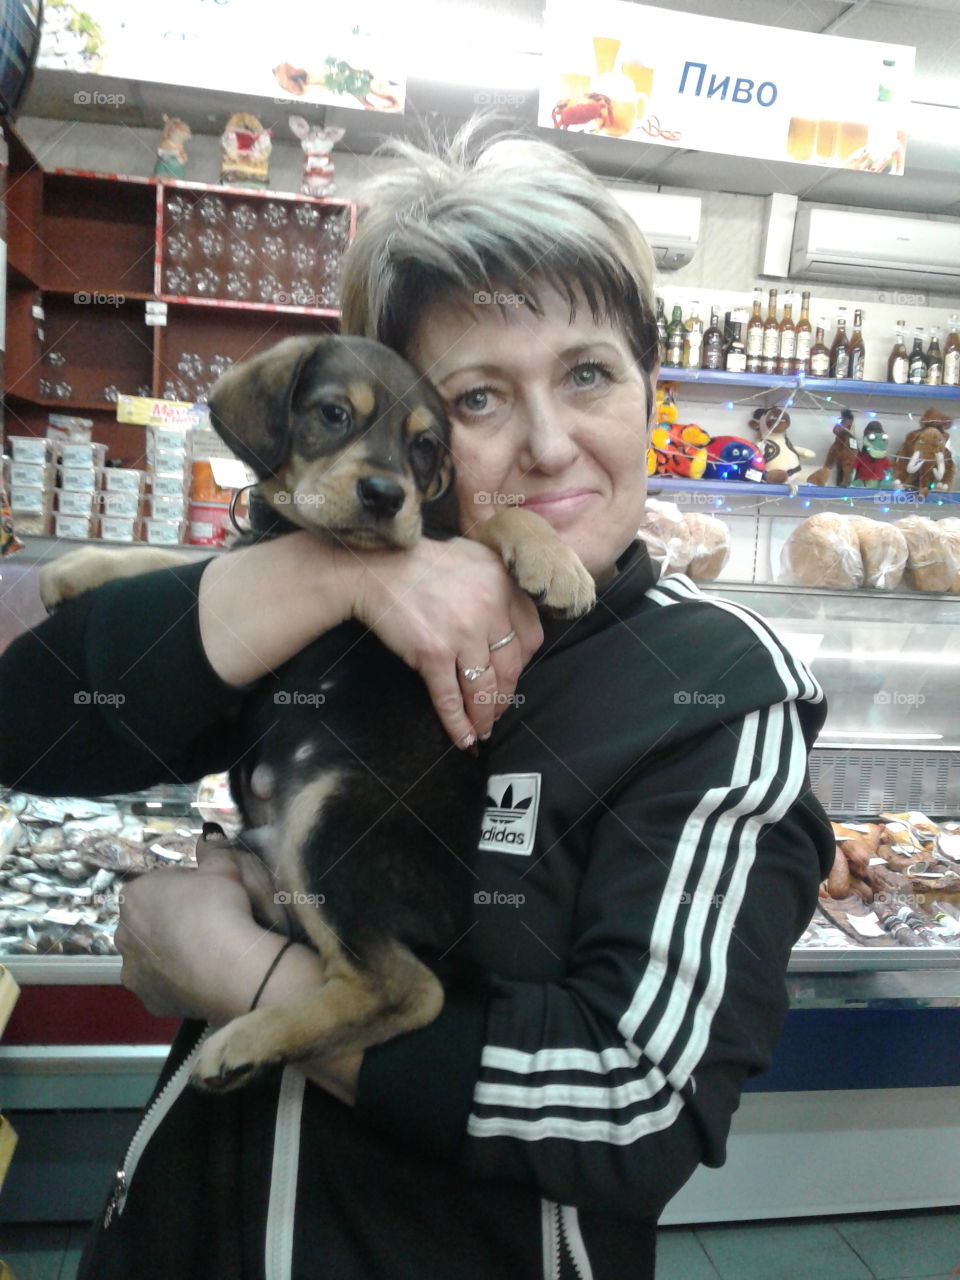 Барнаул 2018г.Я на работе.Понравился маленький щенок 🐕 и я захотела с ним сделать фото 📷.